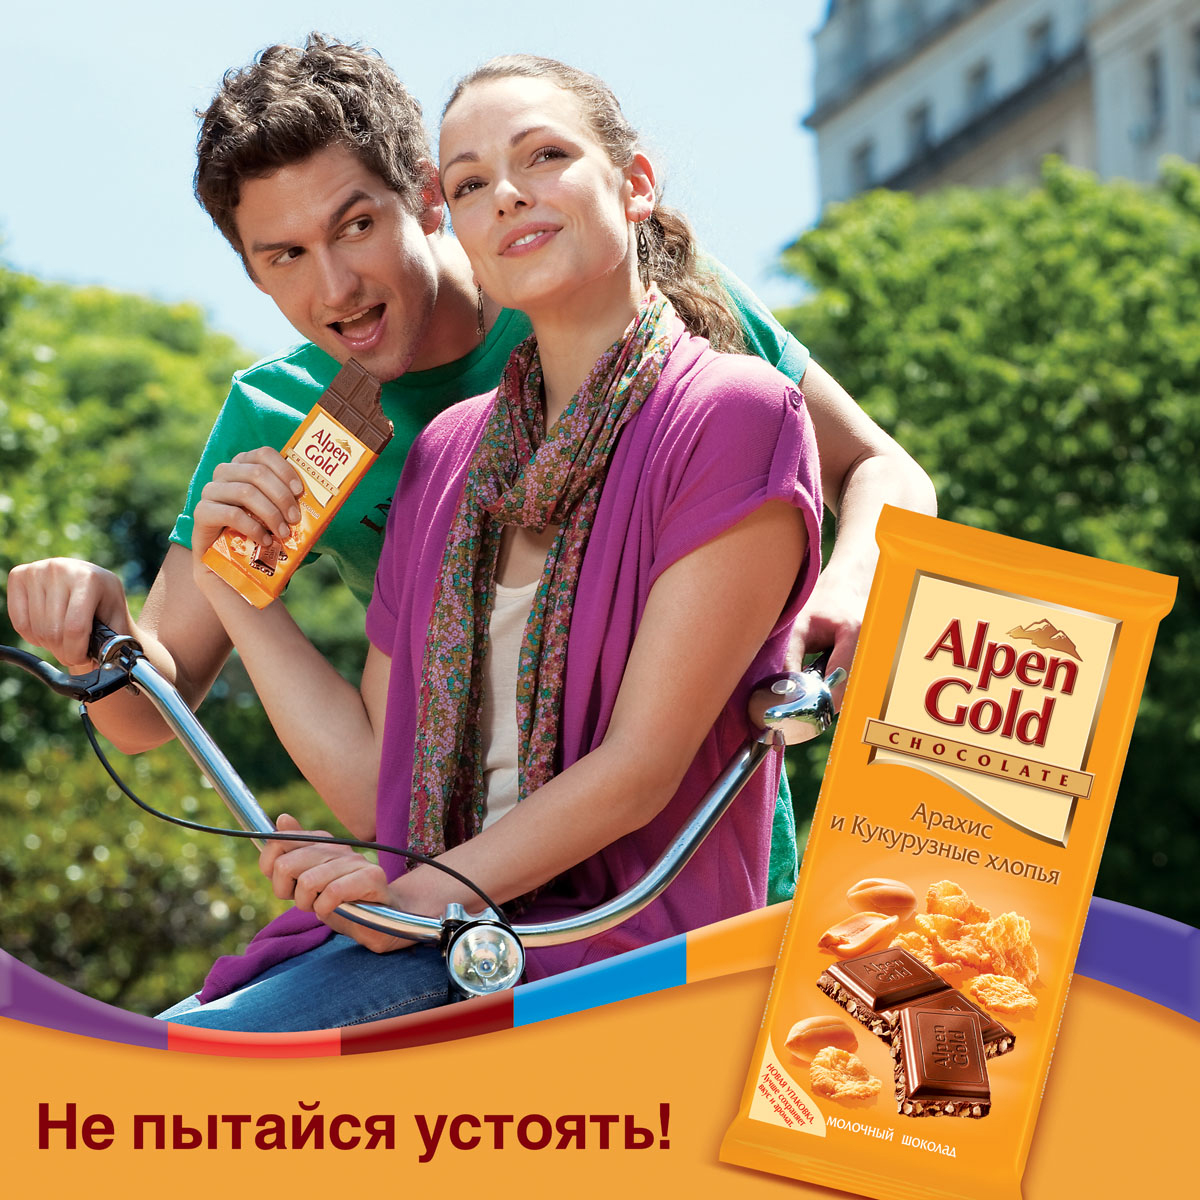 Реклама любого продукта. Реклама шоколада. Реклама Альпен Гольд. Рекламный шоколад. Реклама шоколадки.